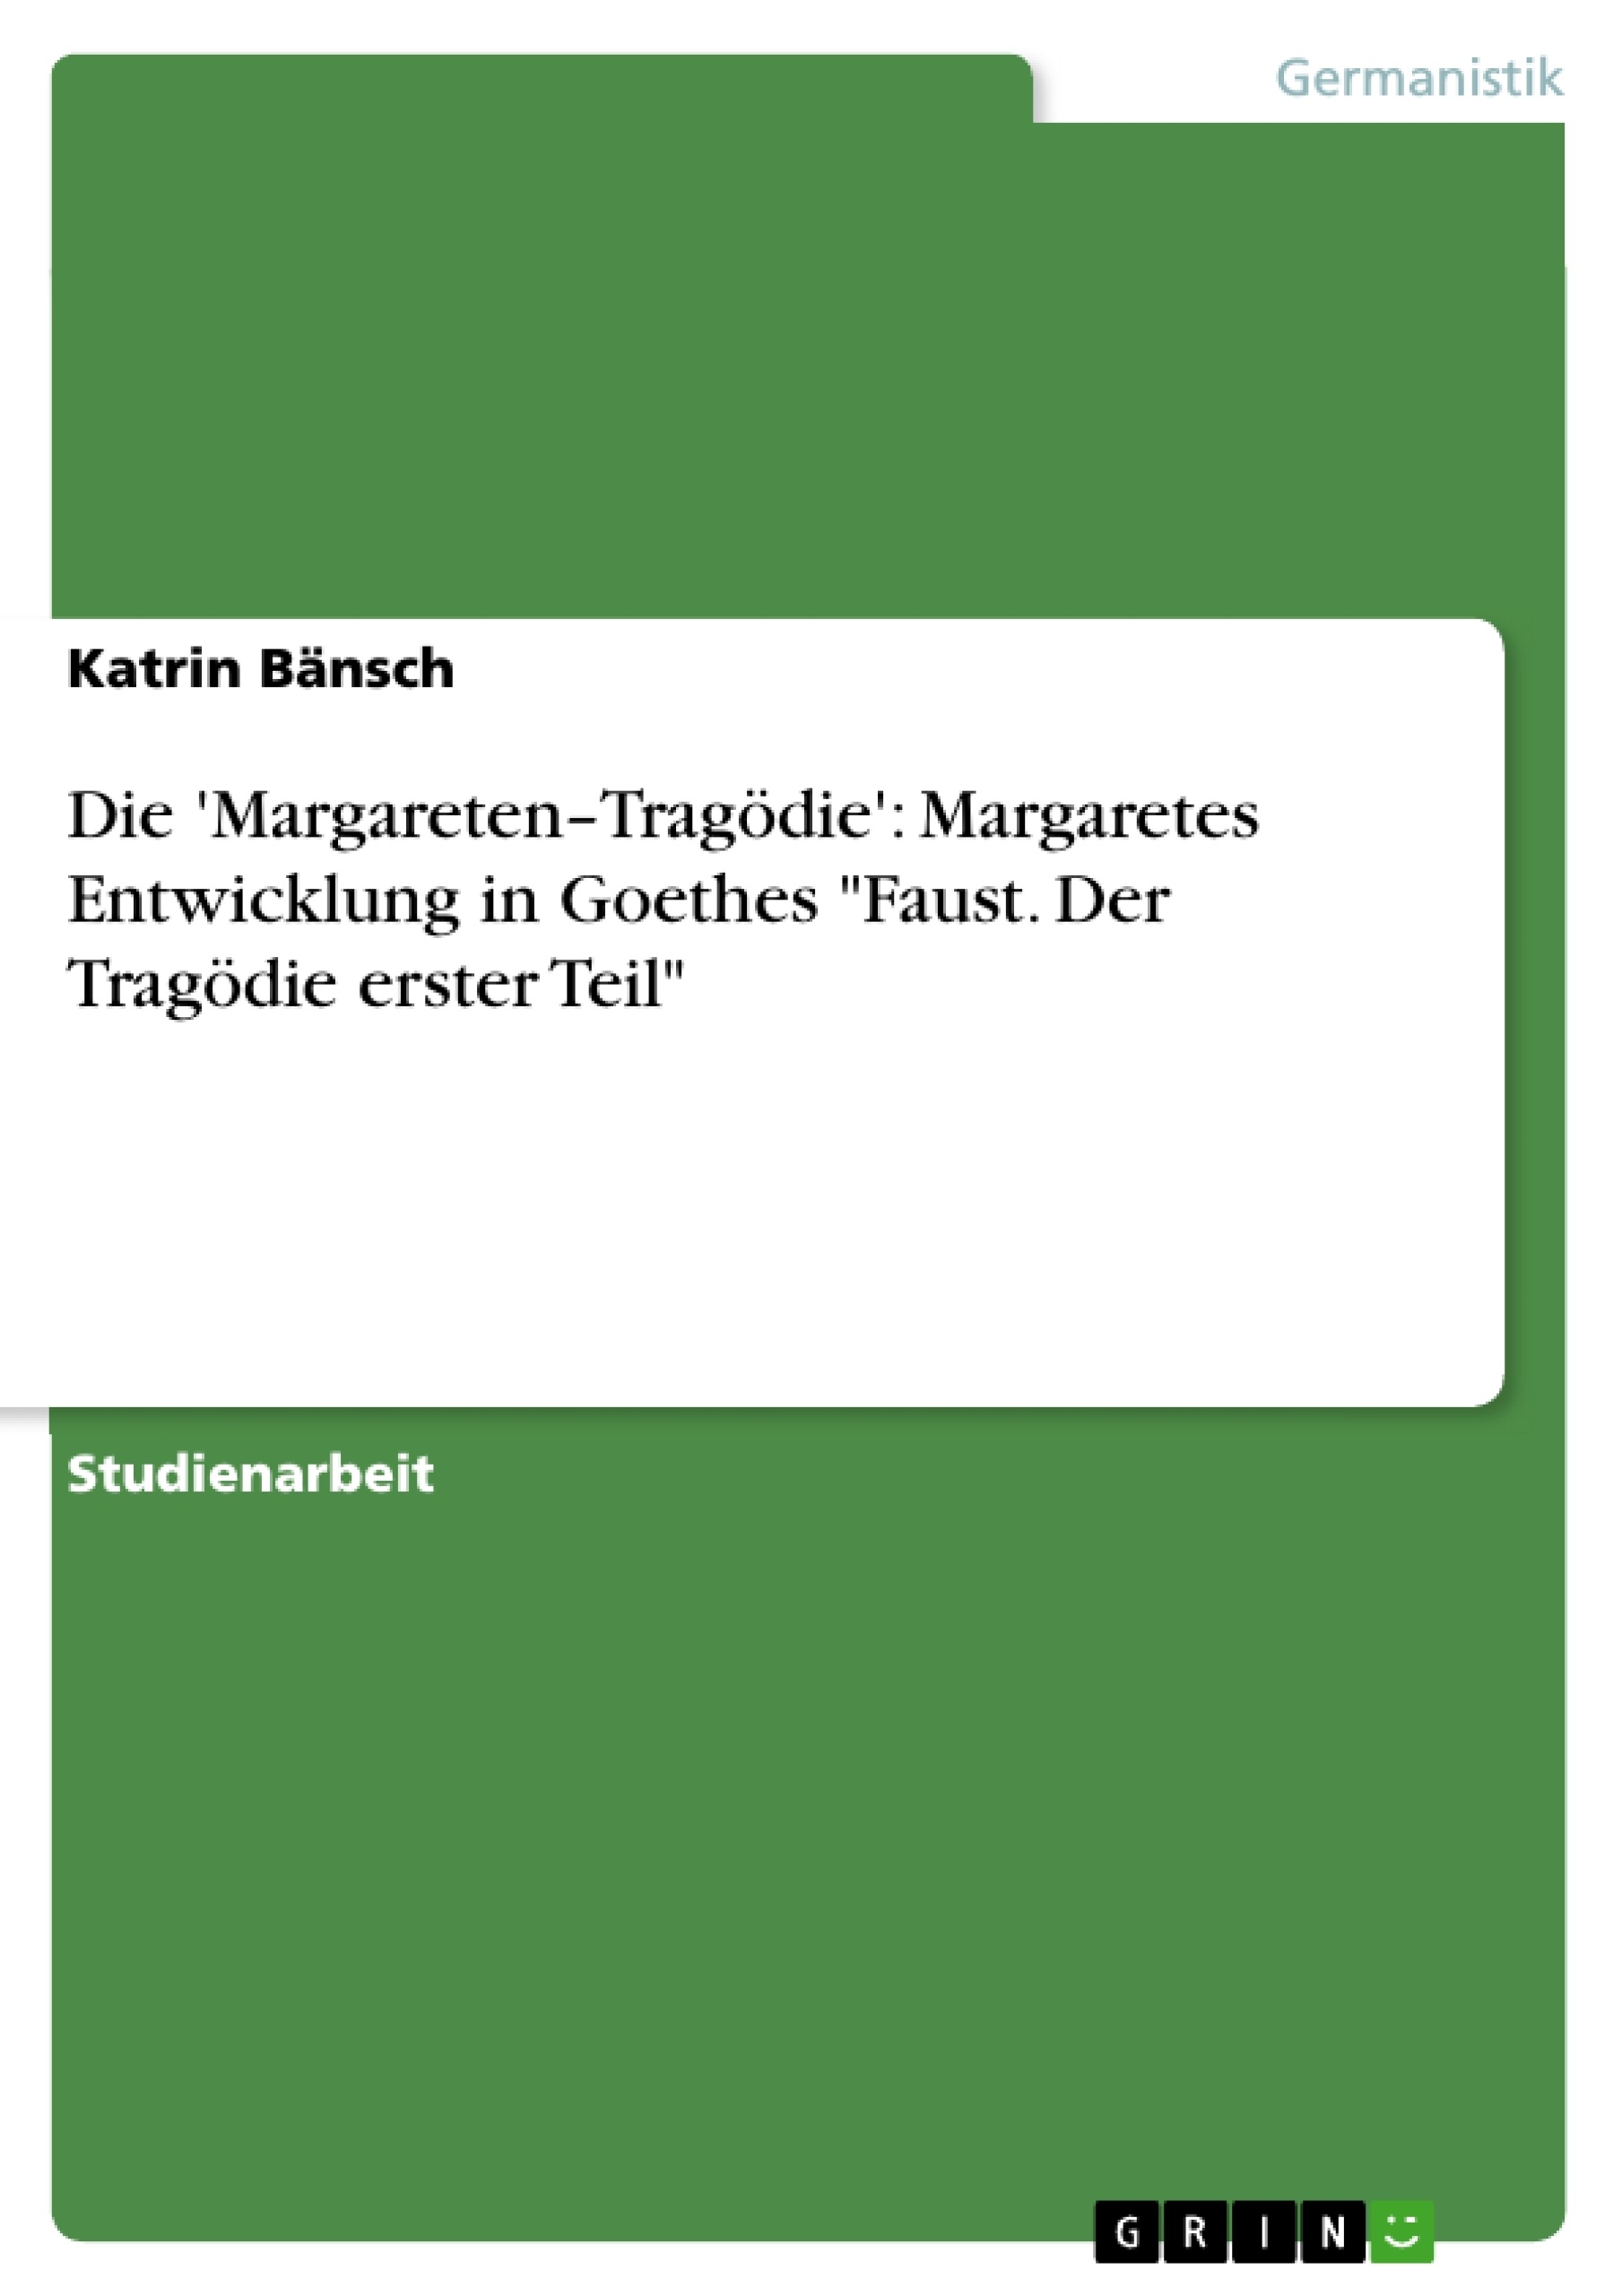 Title: Die 'Margareten–Tragödie': Margaretes Entwicklung in Goethes "Faust. Der Tragödie erster Teil"